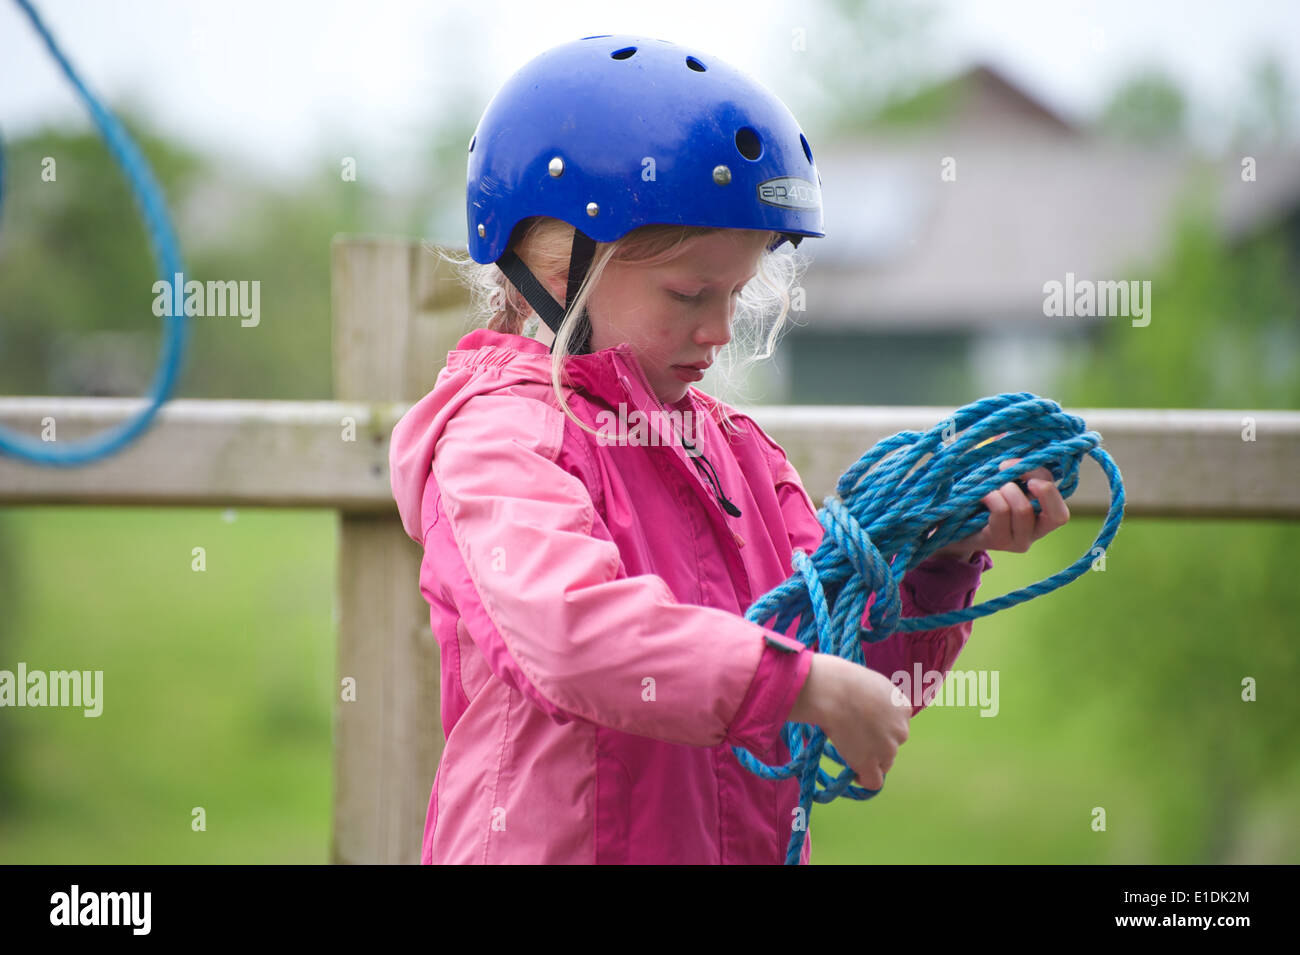 Giovane ragazza bionda bambino kid indossando il casco e giubbotto di salvataggio impegnandosi in sport acquatici Foto Stock